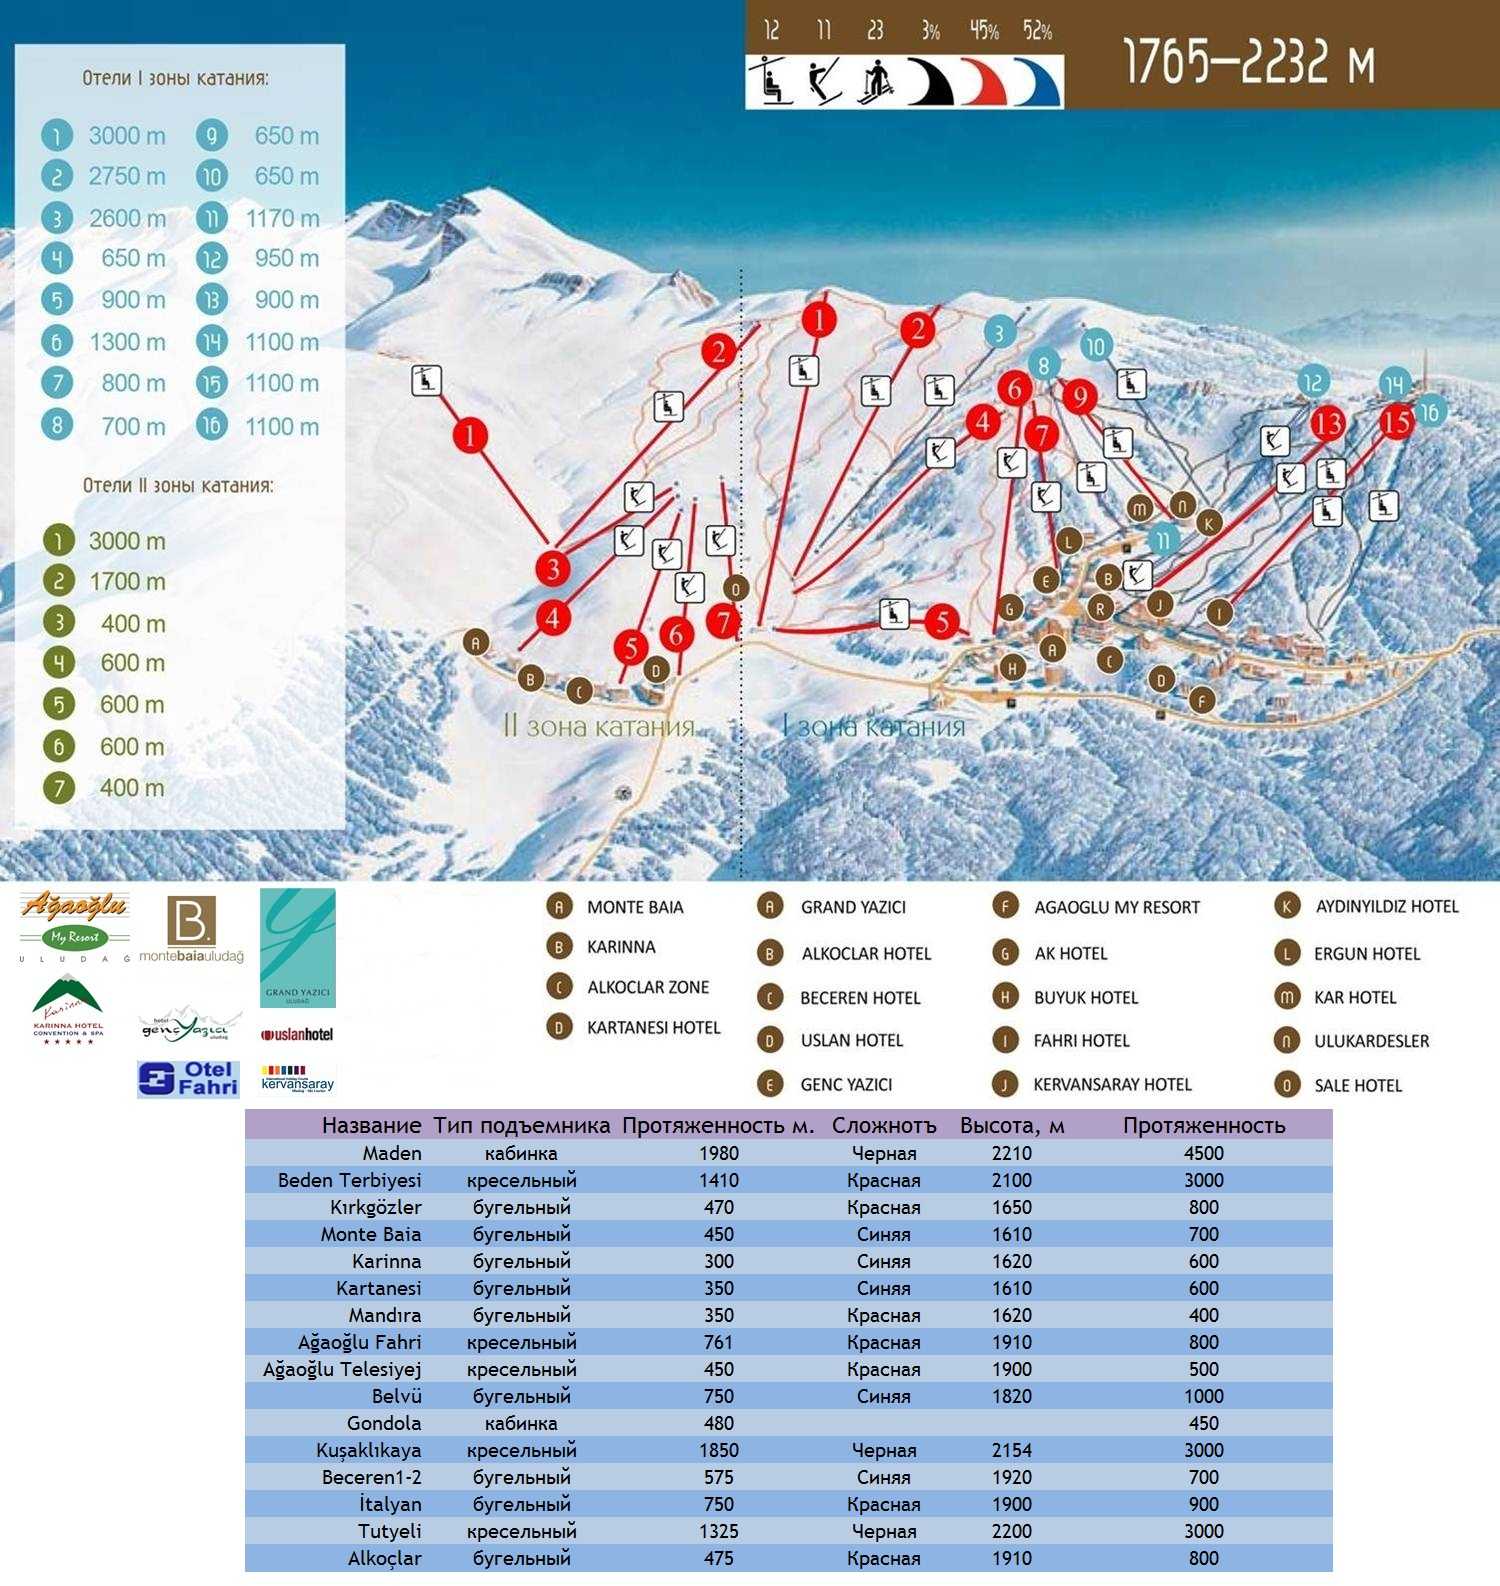 Заказать тур на горнолыжные курорты турции, бронировать горнолыжный тур в турцию